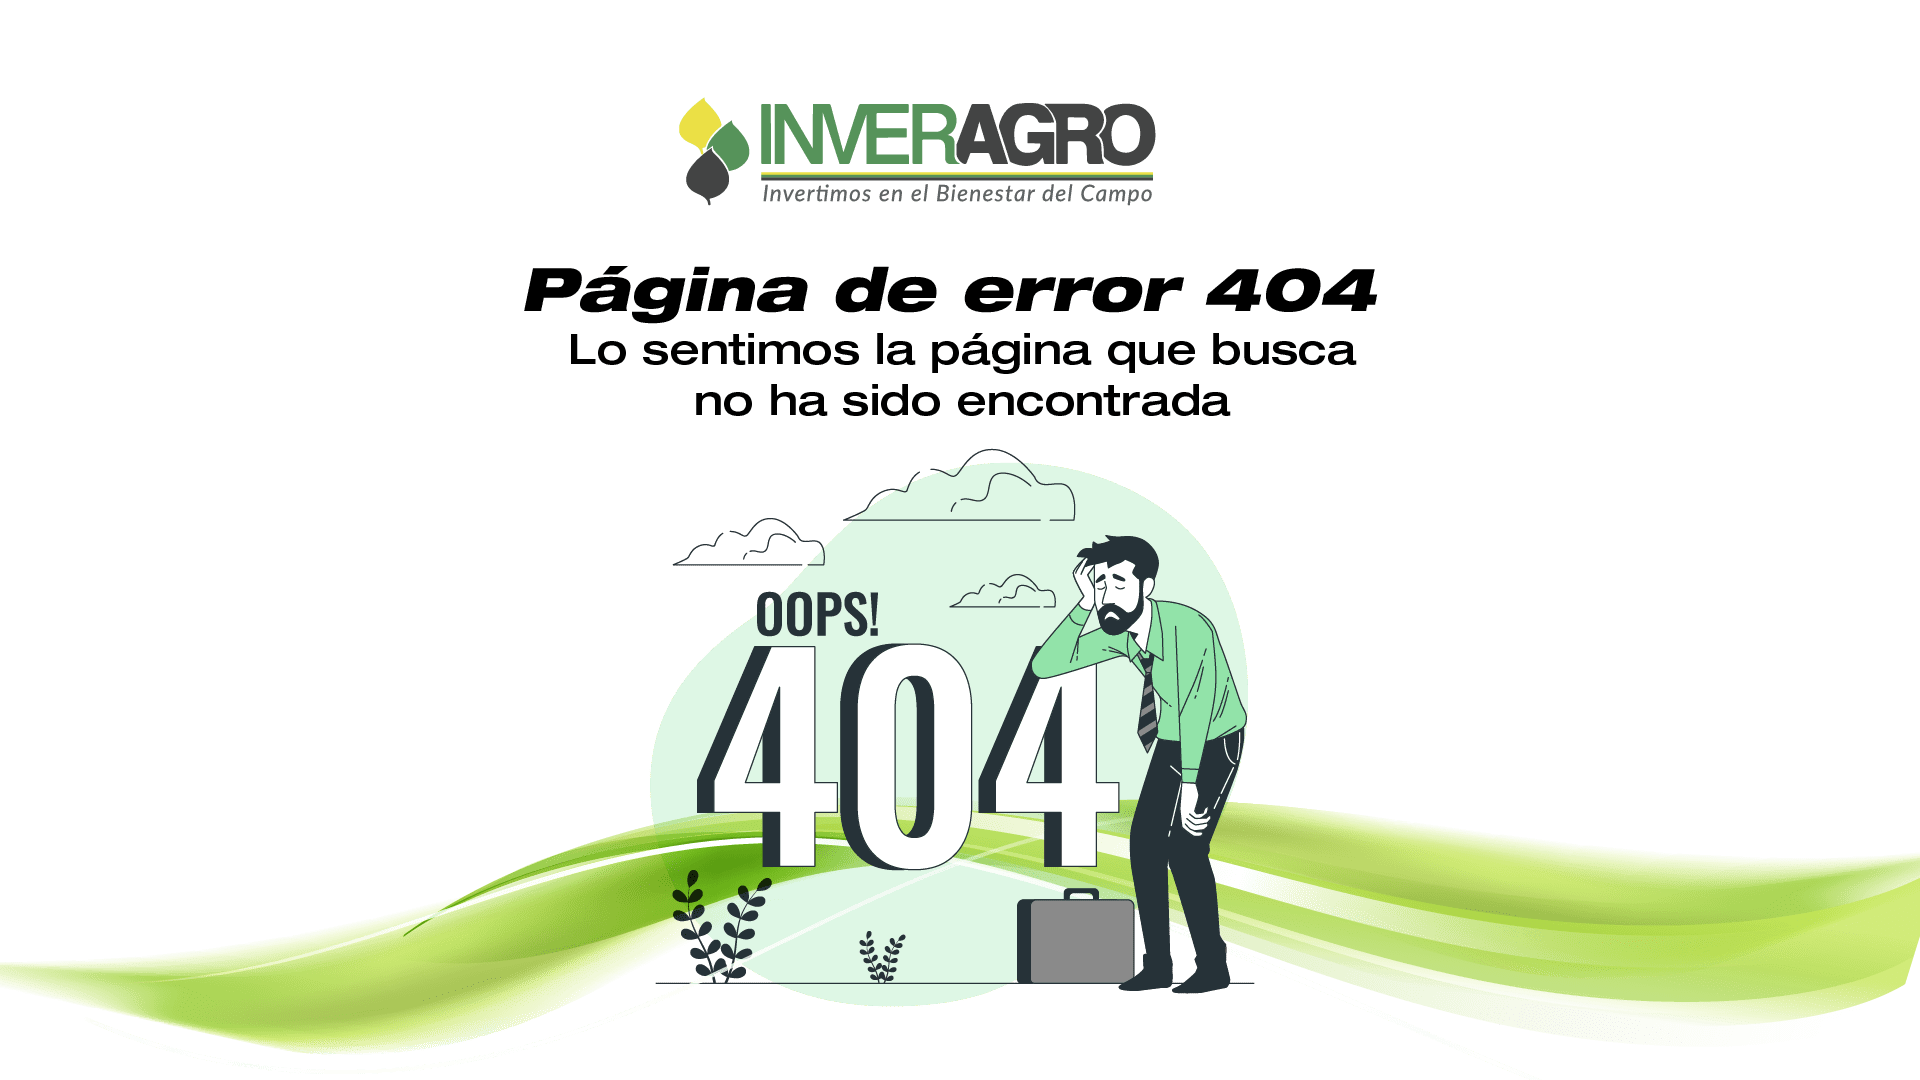 pagina de error 404 inveragro 02